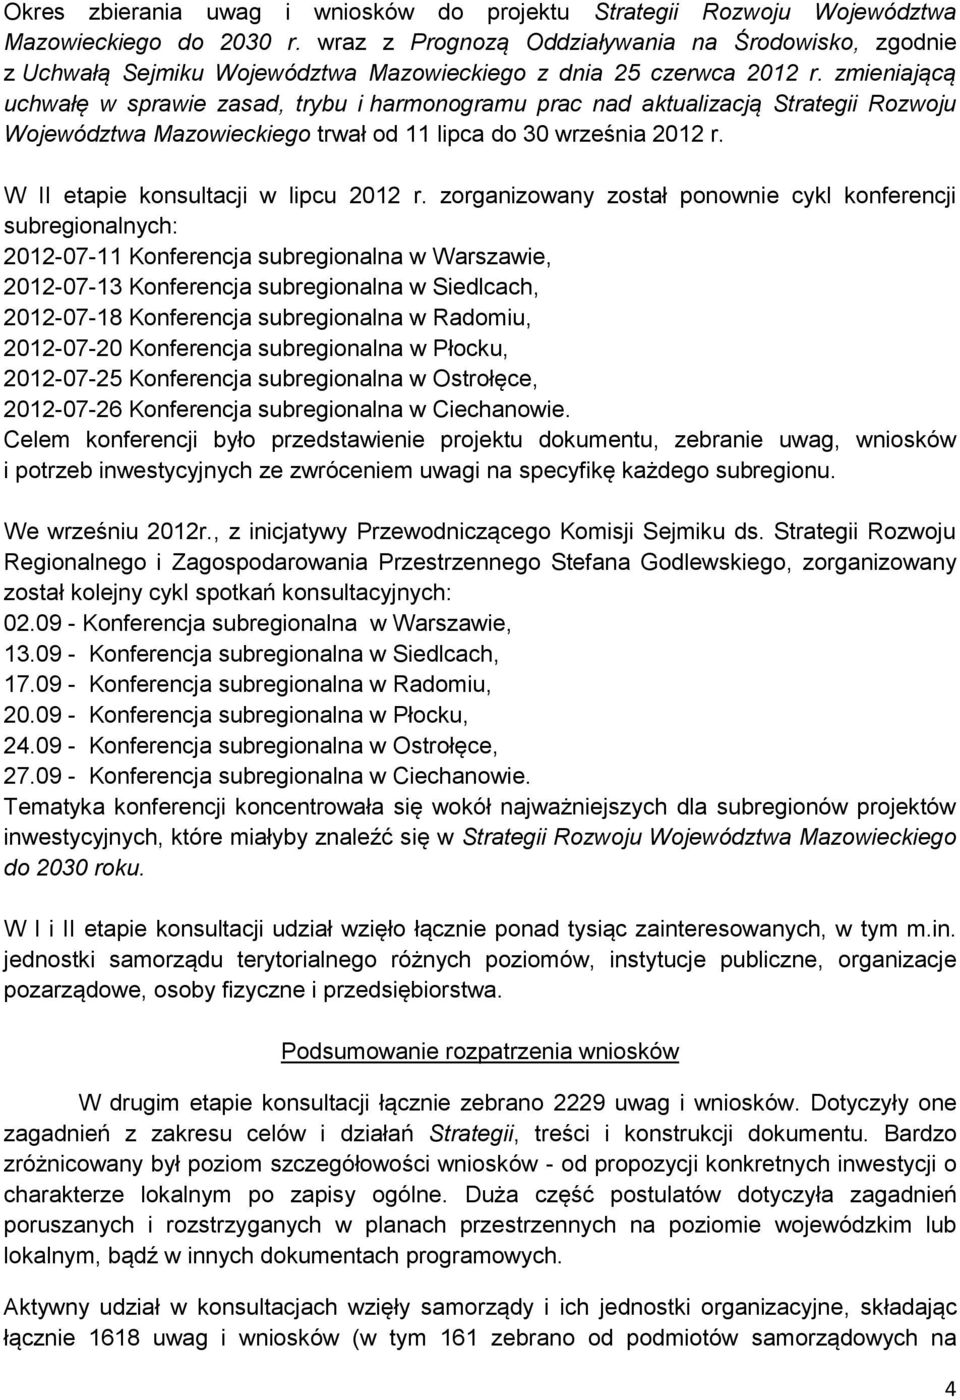 zmieniającą uchwałę w sprawie zasad, trybu i harmonogramu prac nad aktualizacją Strategii Rozwoju Województwa Mazowieckiego trwał od 11 lipca do 30 września 2012 r.